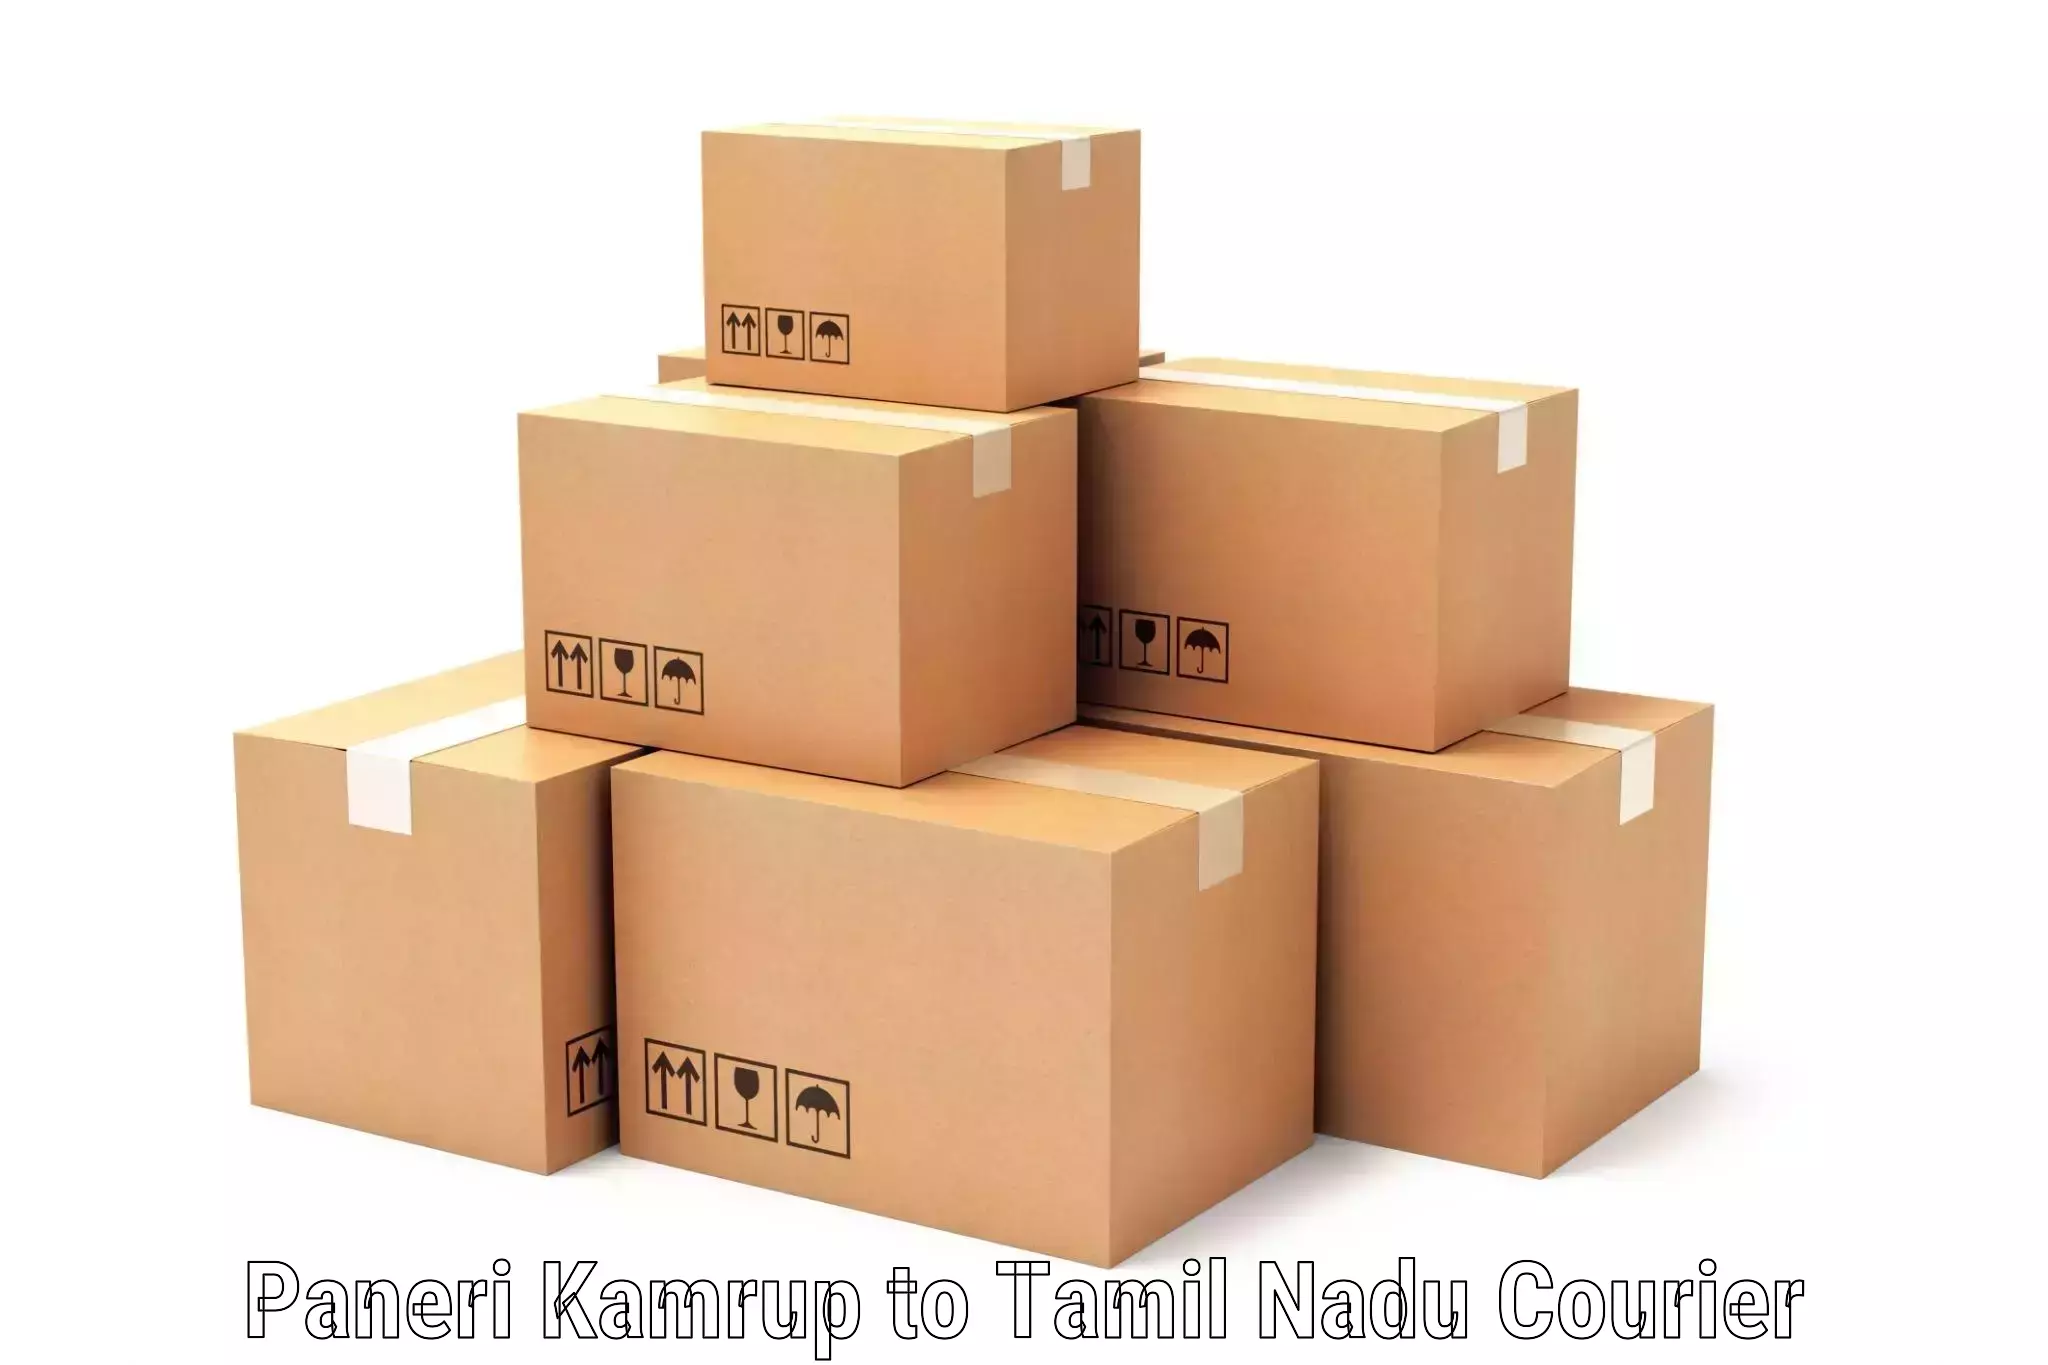 Rapid shipping services Paneri Kamrup to Alagappa University Karaikudi